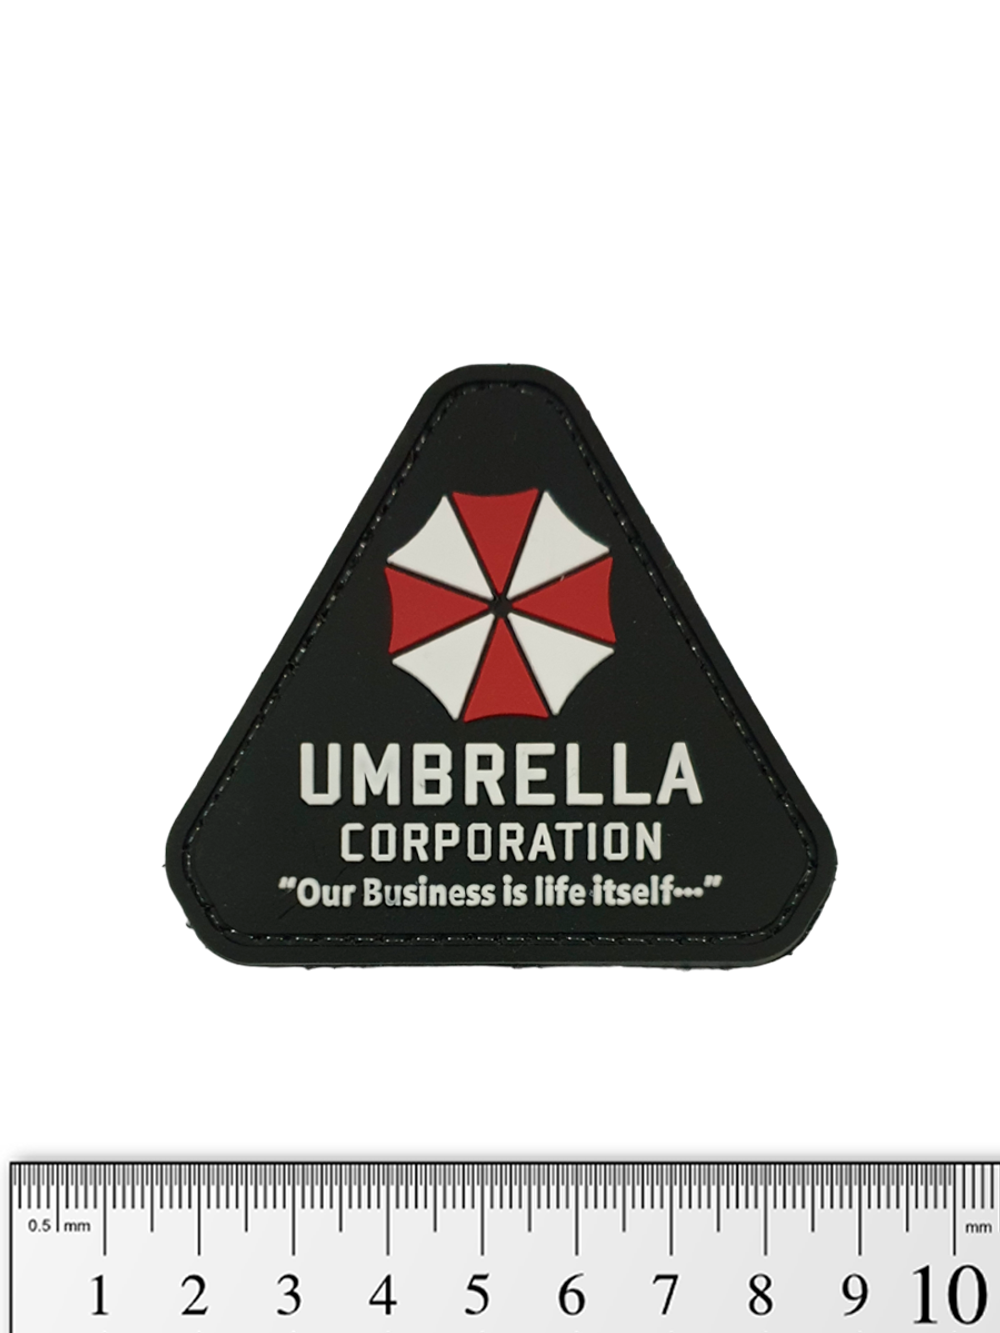 Шеврон Umbrella Corporation. Our Business is life itself треугольник PVC. Чёрный